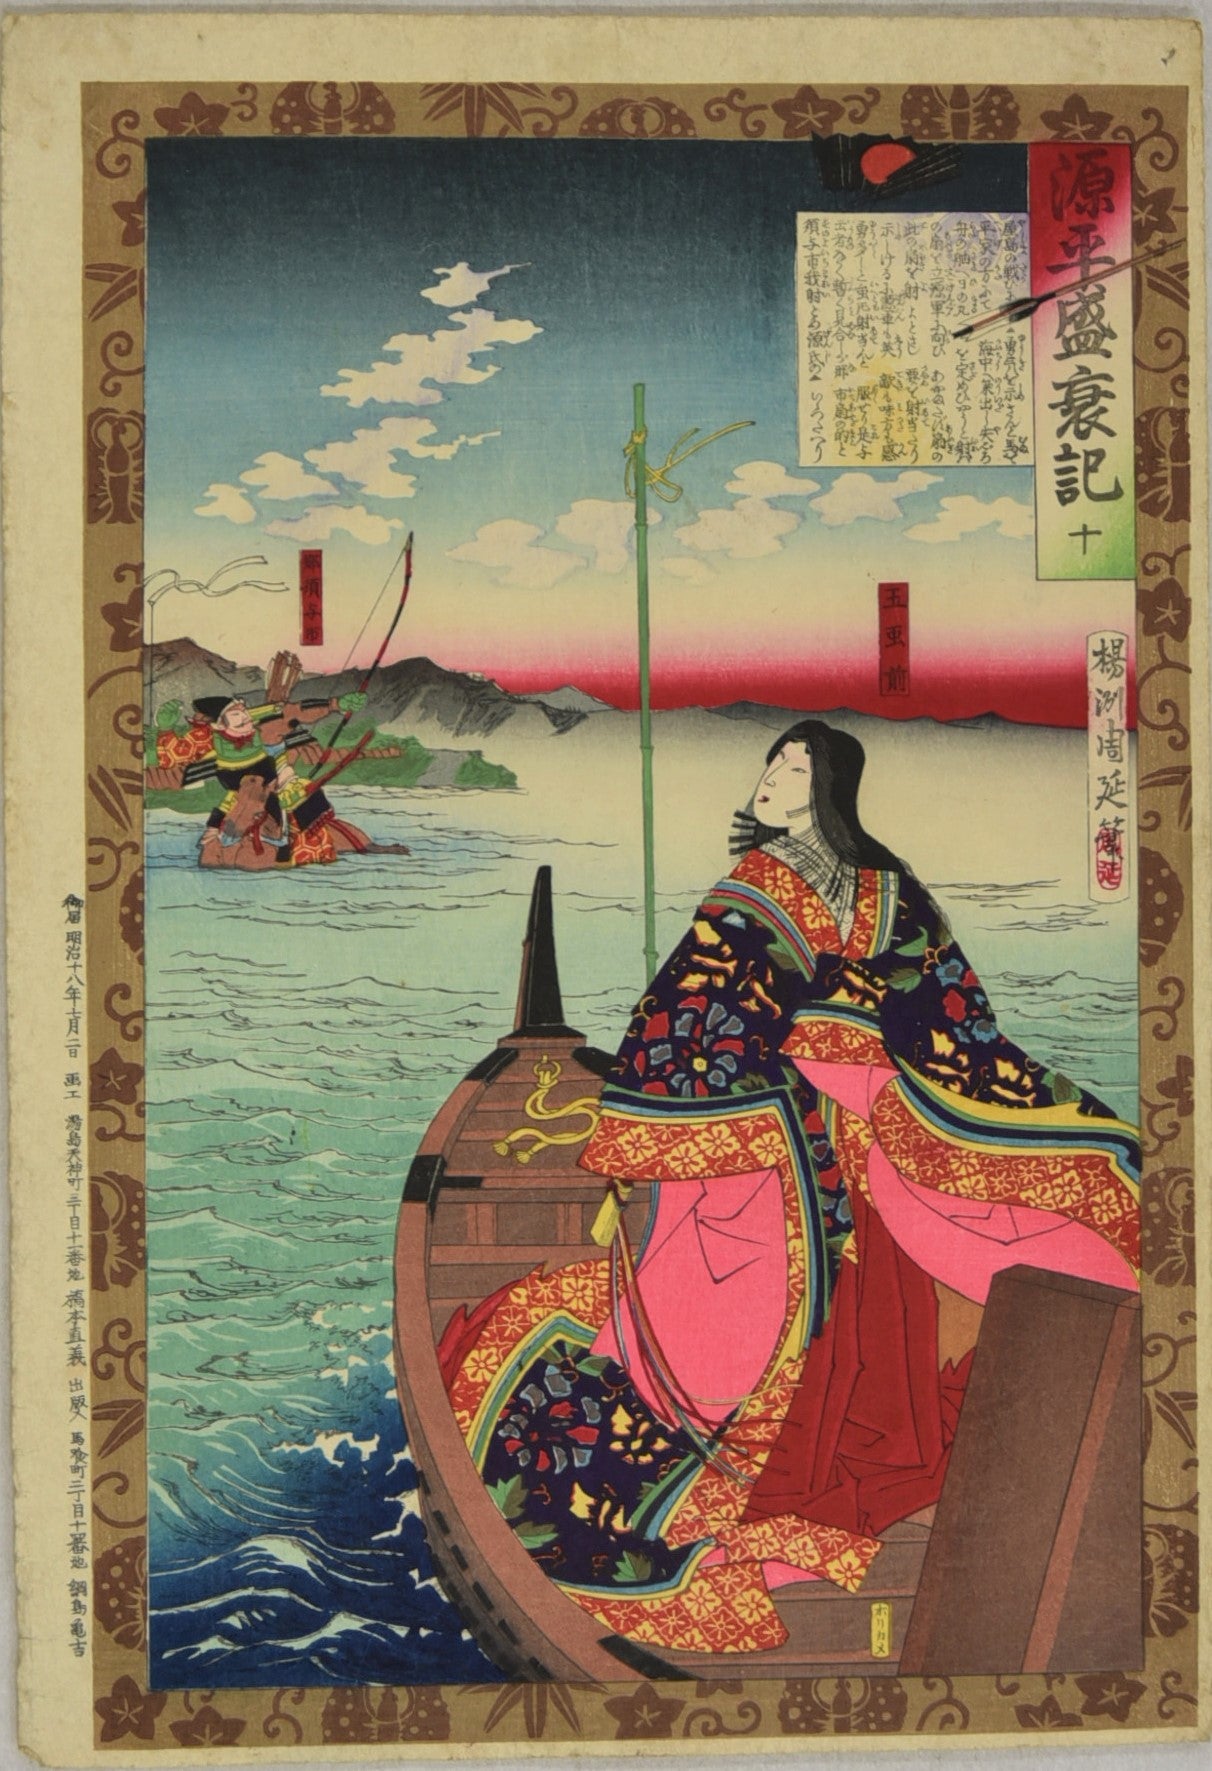 Nasu no Yoichi from the series "Minamoto-Heike War Record" by Chikanobu / Nasu no Yoichi de la série "Chronique de la guerre Minamoto-Heike "par Chikanobu (1885)